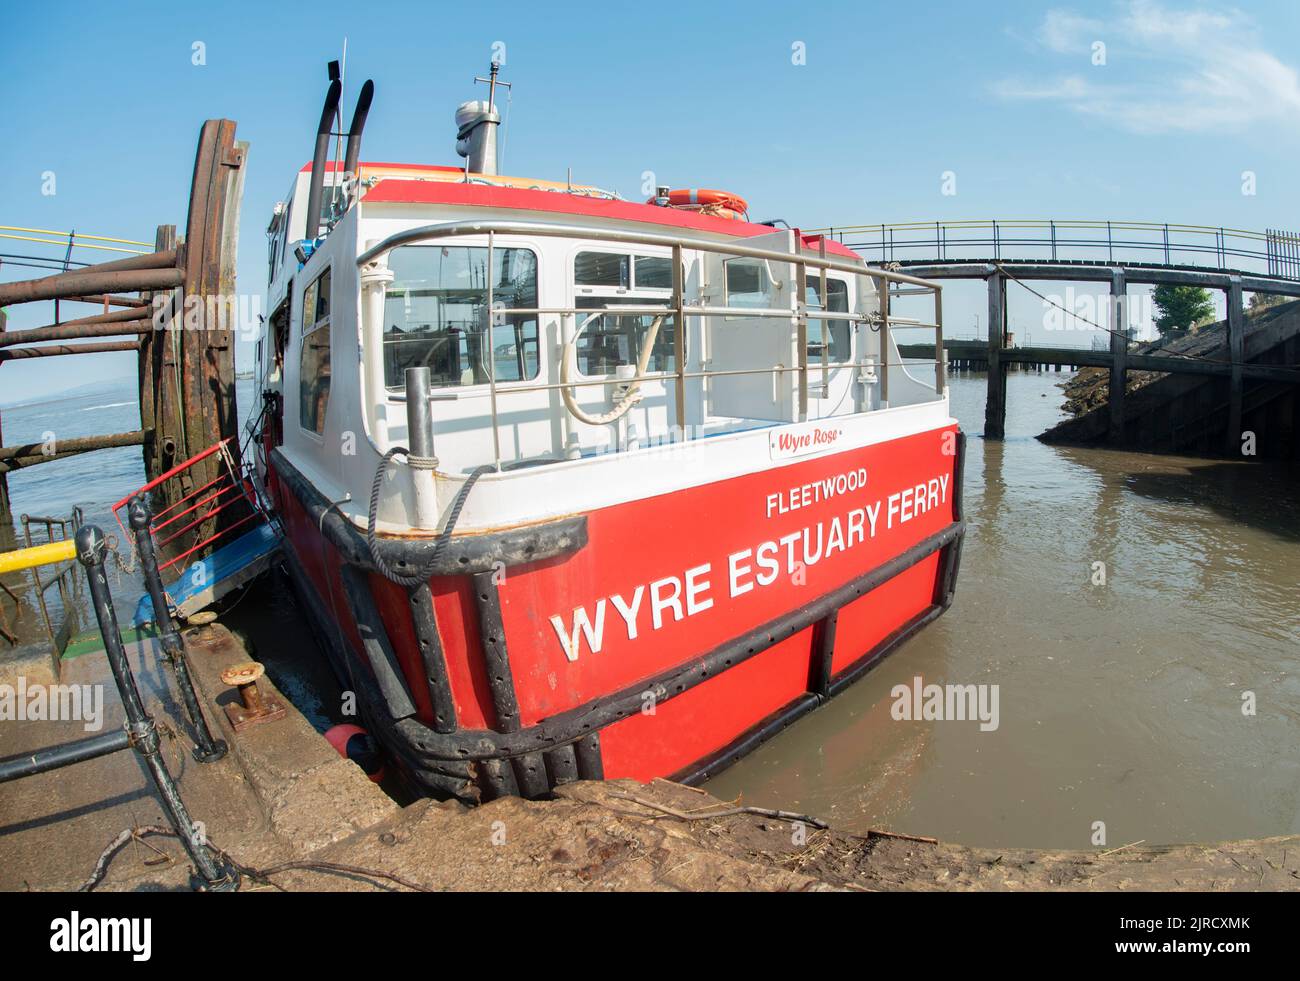 Ferry pour l'estuaire de Fleetwood Wyre, Wyre Rose, Fleetwood, Lancashire Banque D'Images